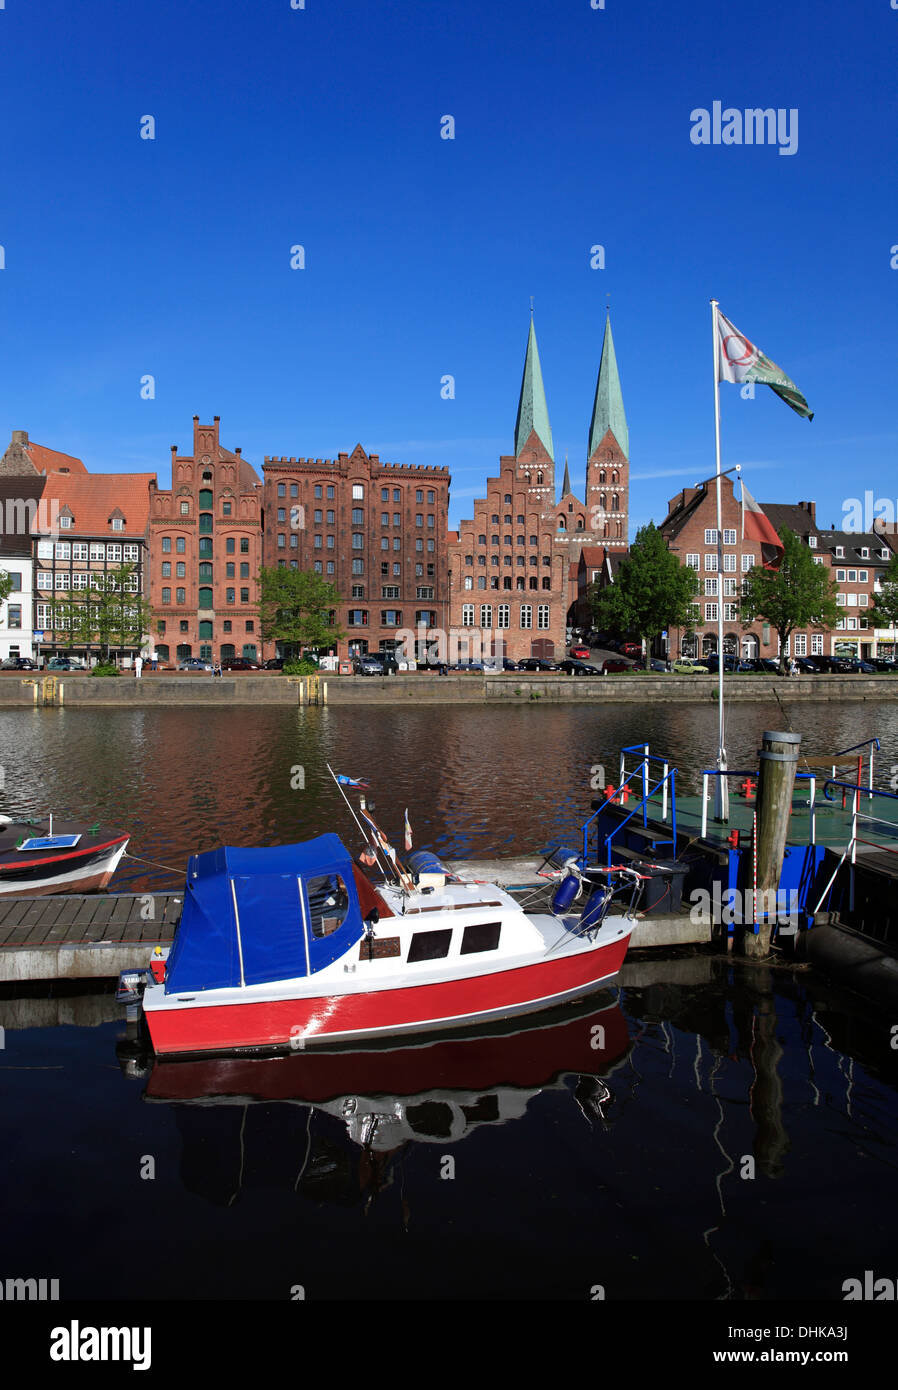 Boote auf dem Fluss Trave, Hansestadt Lübeck, Schleswig-Holstein, Deutschland Stockfoto